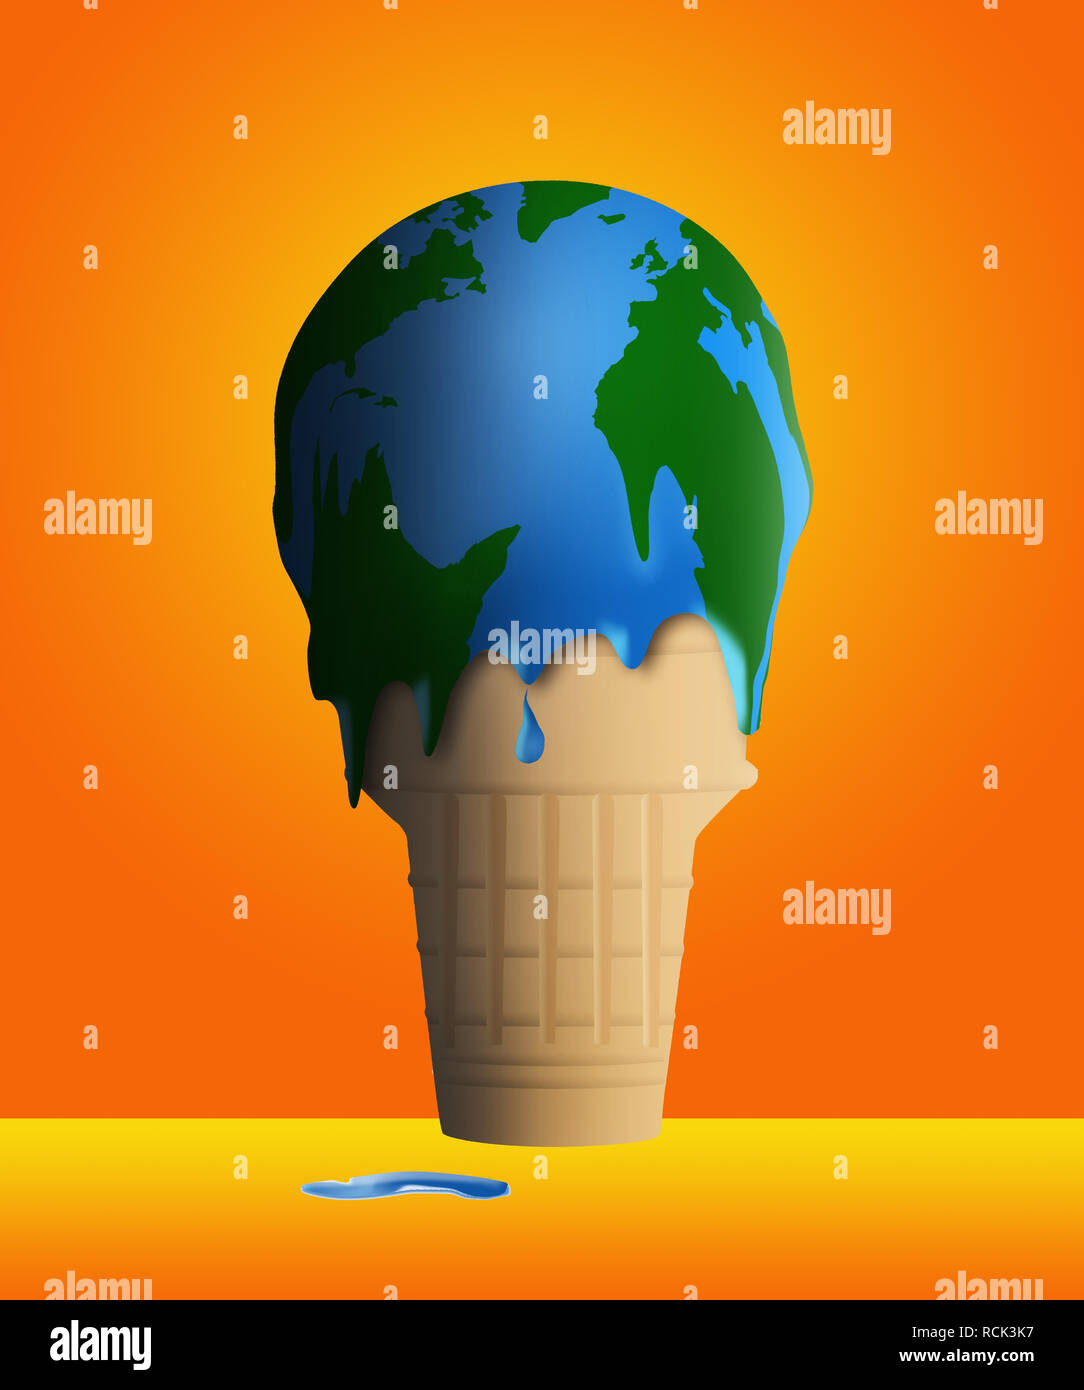 Le réchauffement est illustré avec un melting ice cream cone et la glace semble également être un globe de plan de masse. C'est une illustration. Banque D'Images